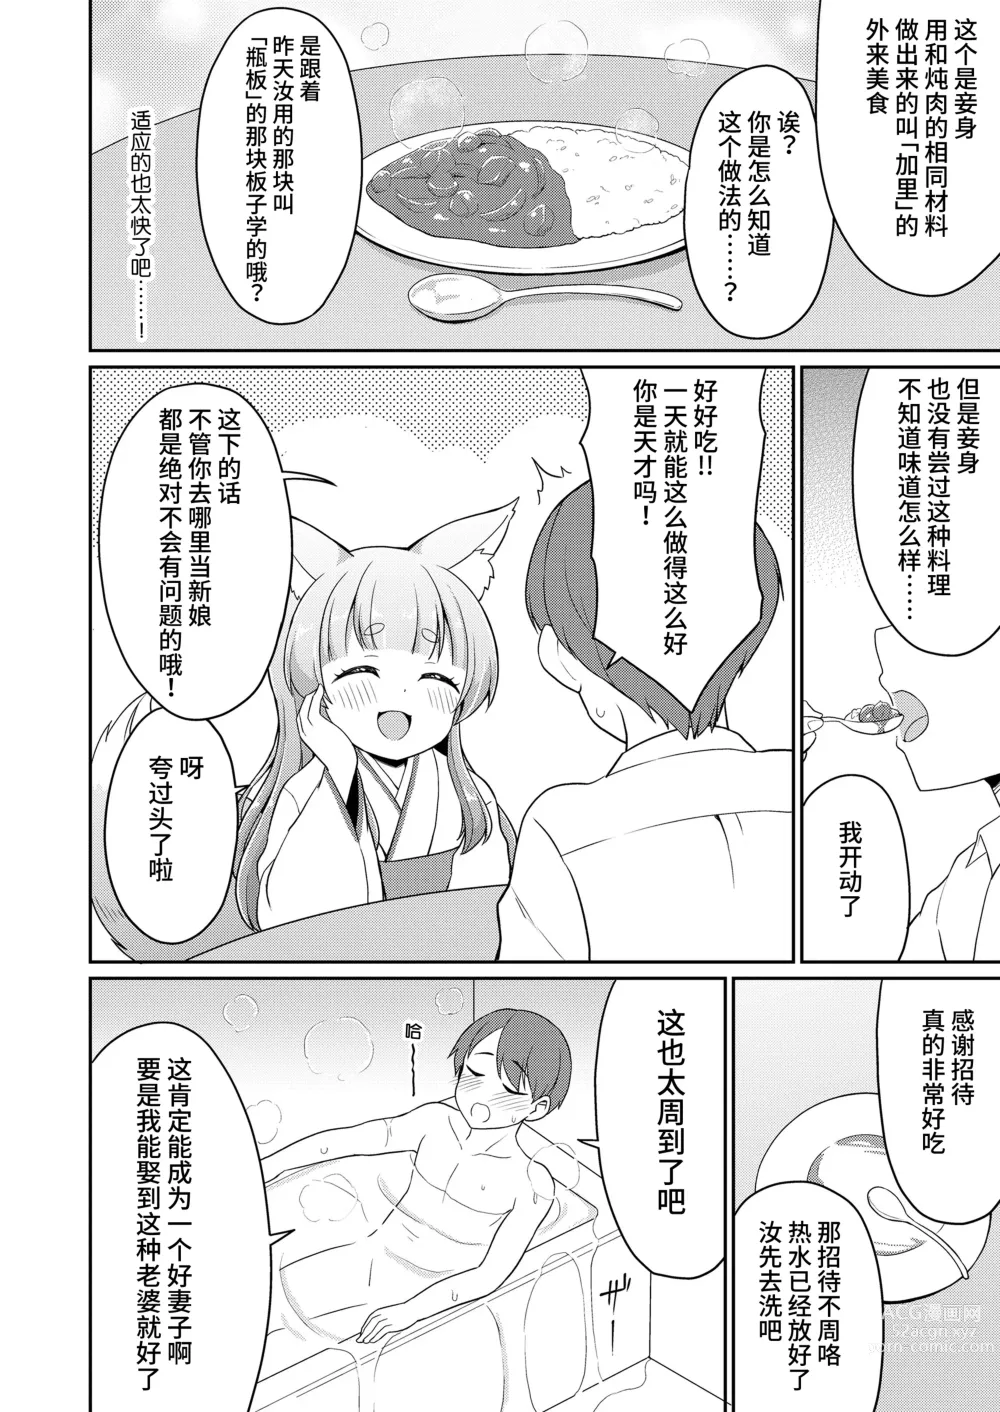 Page 8 of manga 婚活 1-2